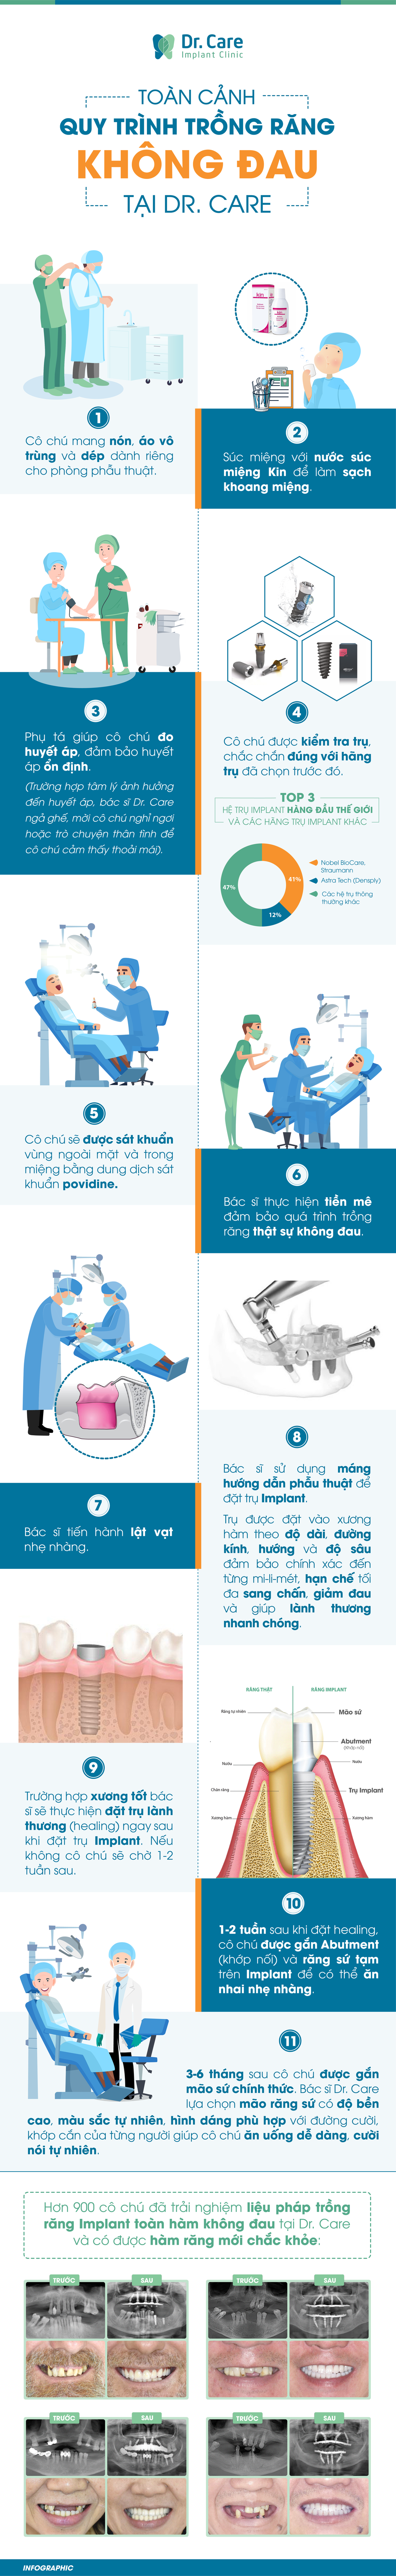 Toàn cảnh ca trồng răng Implant không đau tại nha khoa chuyên sâu - Ảnh 2.